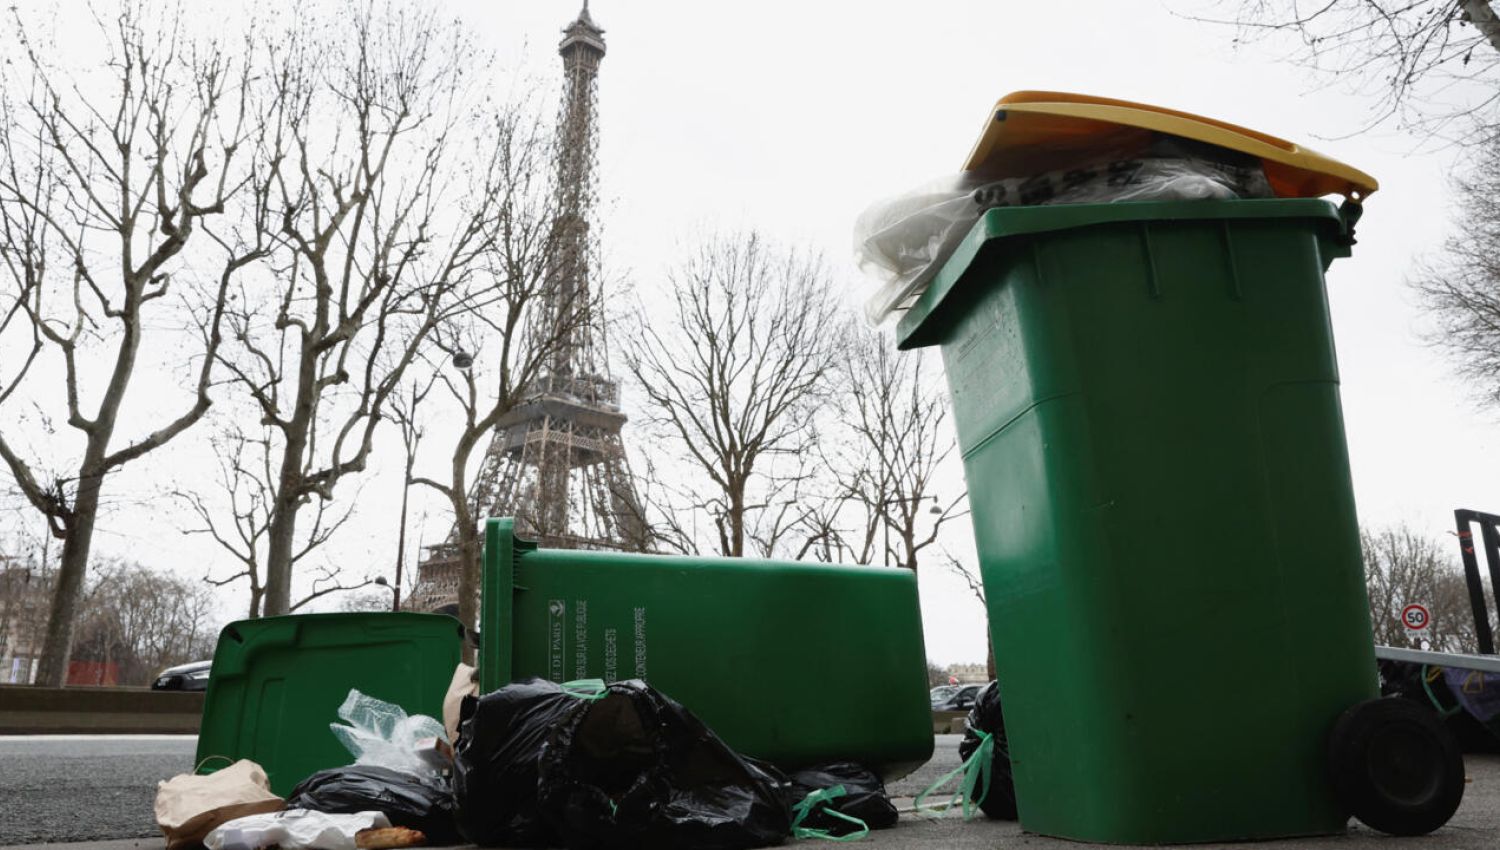 باريس غارقة في القمامة: الفوضى في بداياتها؟ 